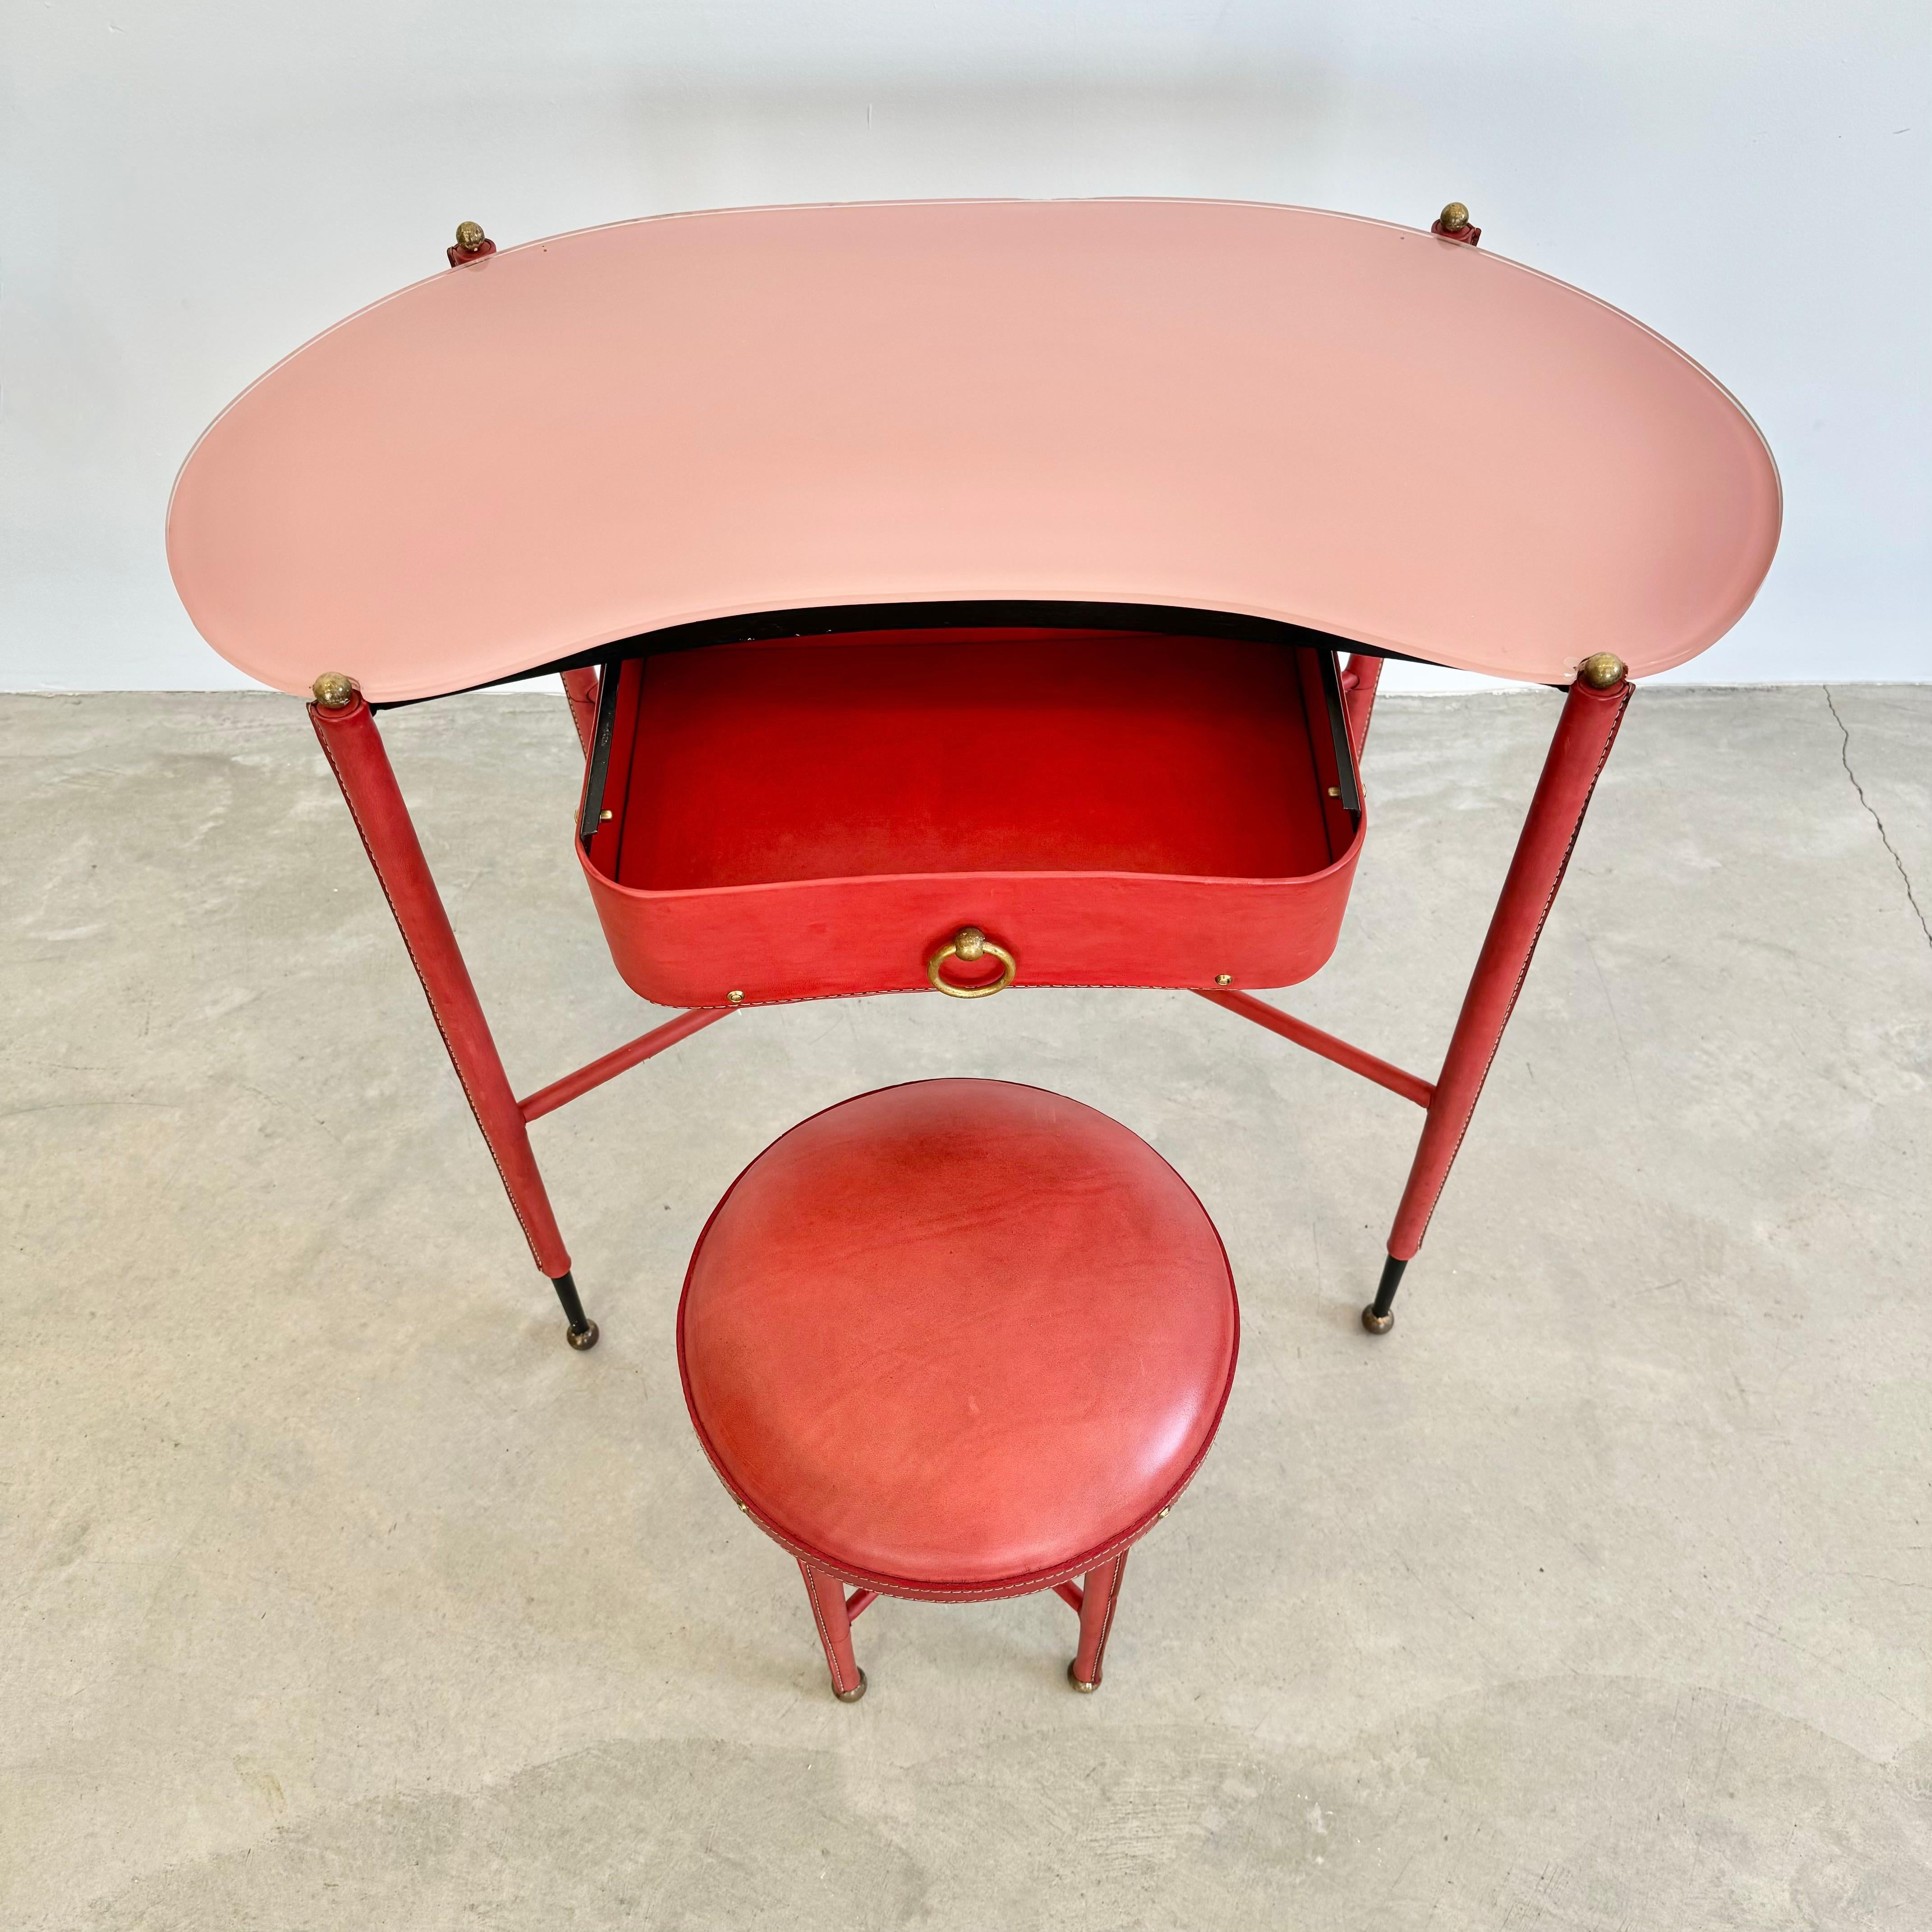 Wunderschöner Waschtisch des französischen Designers Jacques Adnet. Eisengestell komplett in rotes Leder gehüllt. Die Beine verjüngen sich zu scharfkantigem Eisen und enden mit Kugelfüßen aus Messing. Die Oberseite jedes Beins ist mit einer